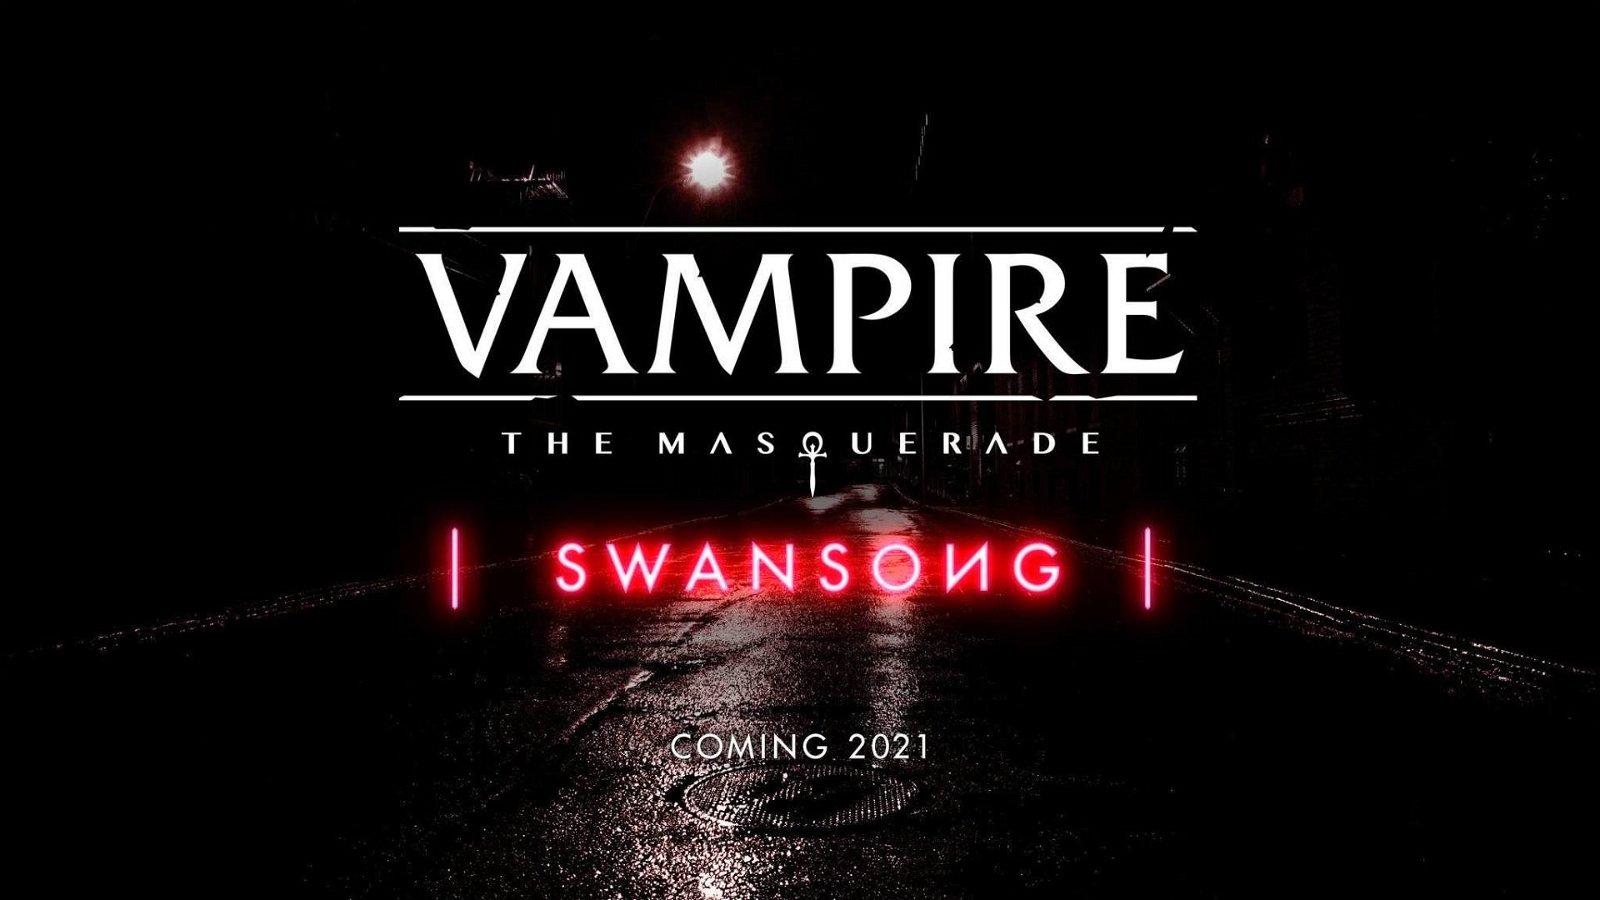 Immagine di Vampire The Masquerade, Swansong arriverà nel 2021